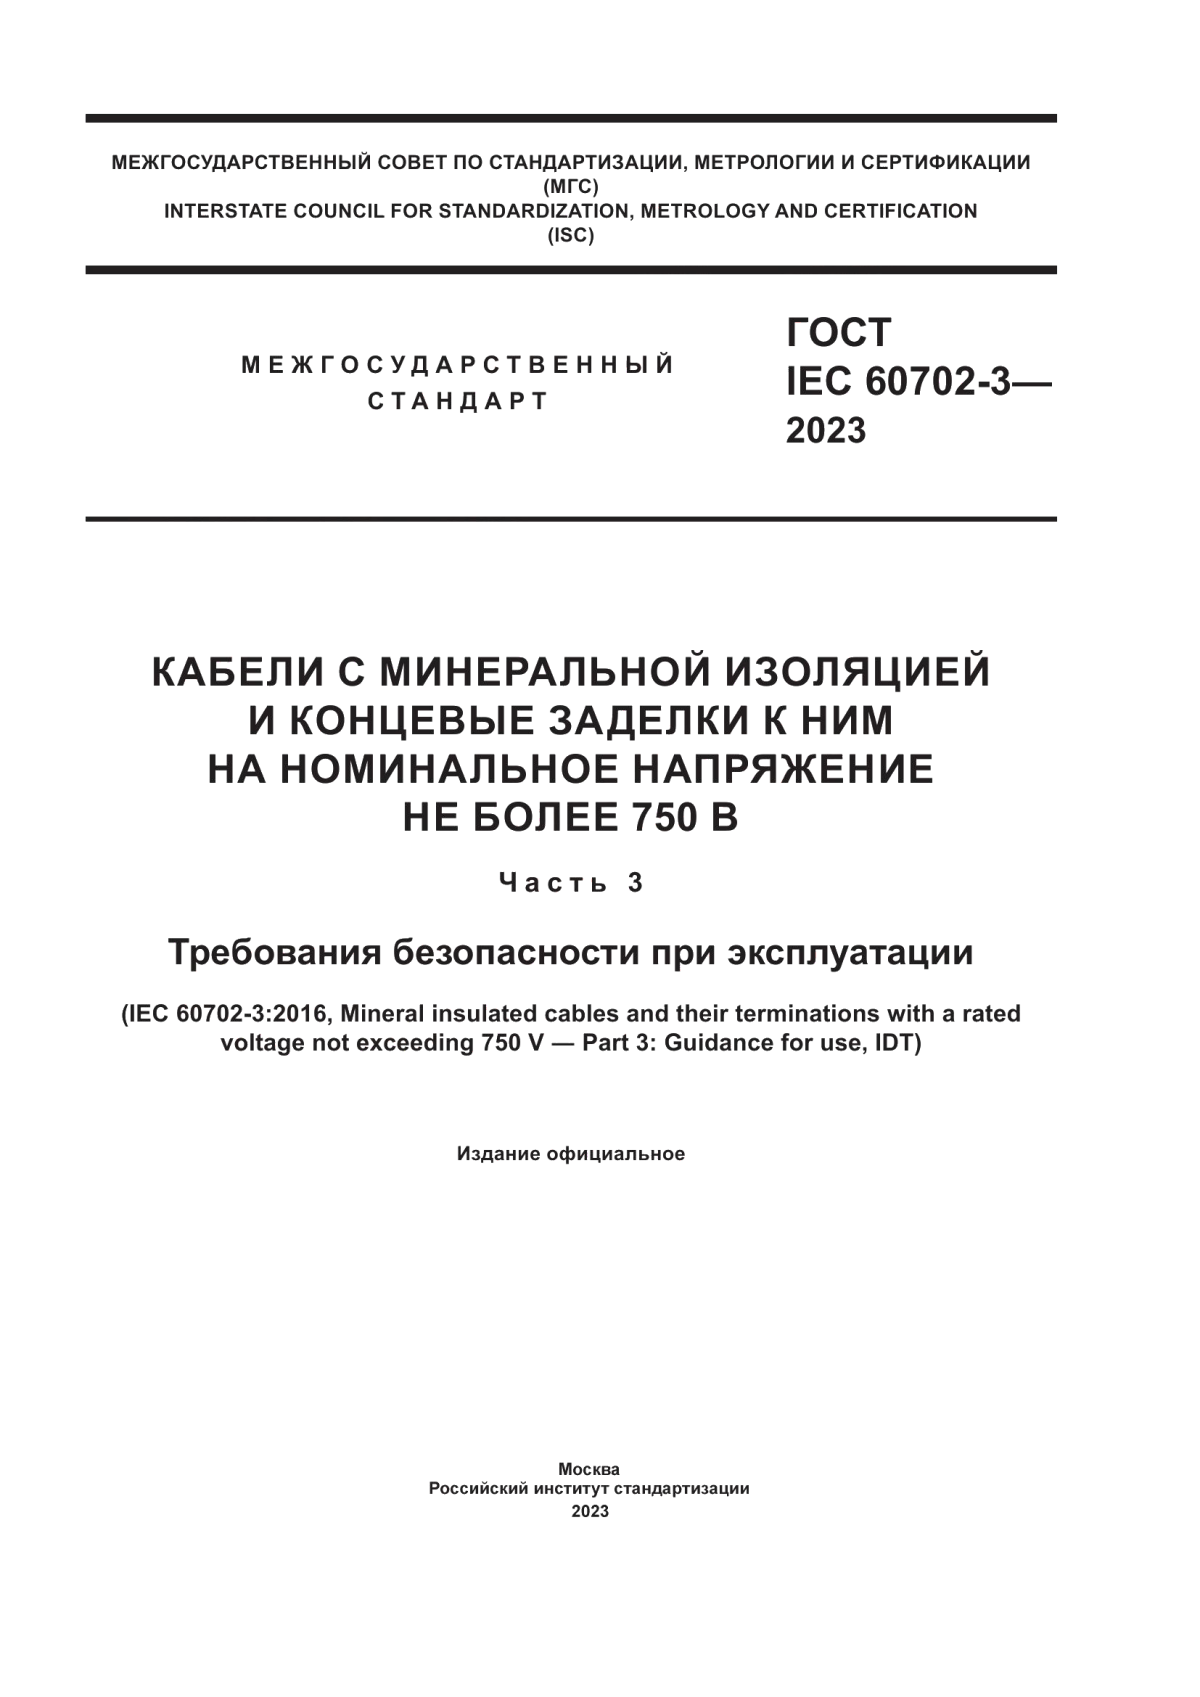 ГОСТ IEC 60702-3-2023 Кабели с минеральной изоляцией и концевые заделки к ним на номинальное напряжение не более 750 В. Часть 3. Требования безопасности при эксплуатации